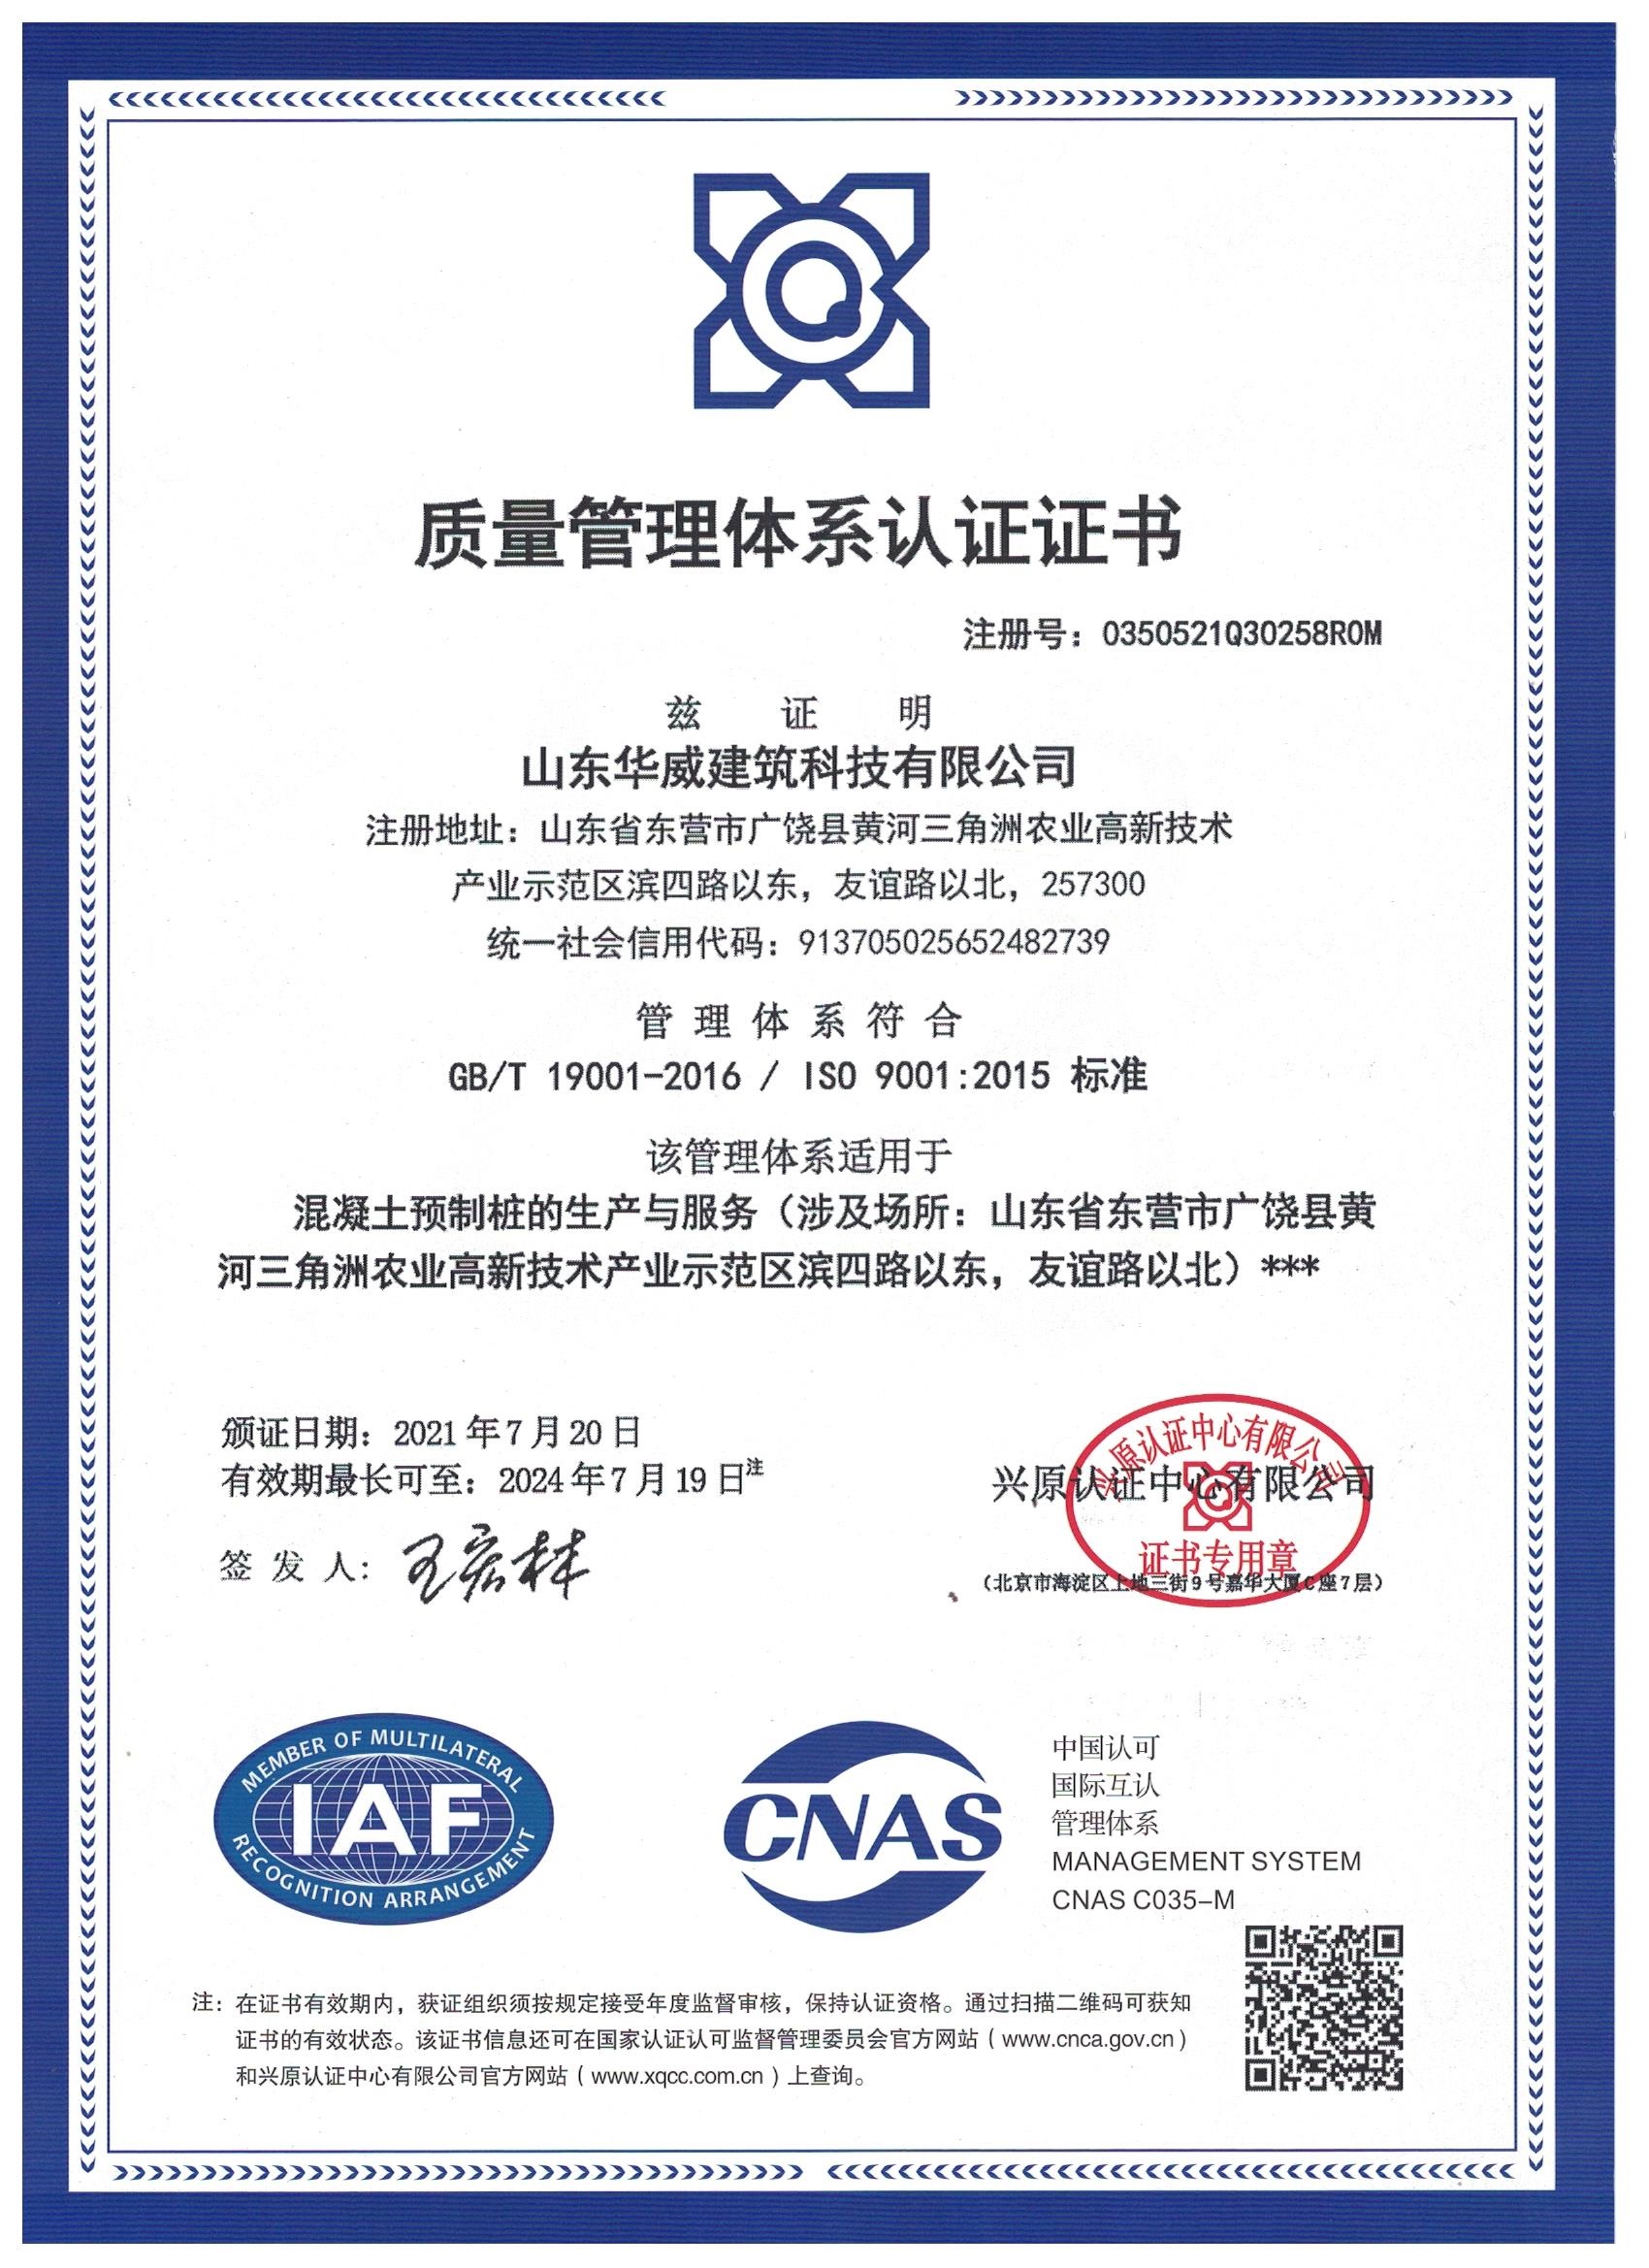 质量管理体系认证证书2021.7.29.jpg